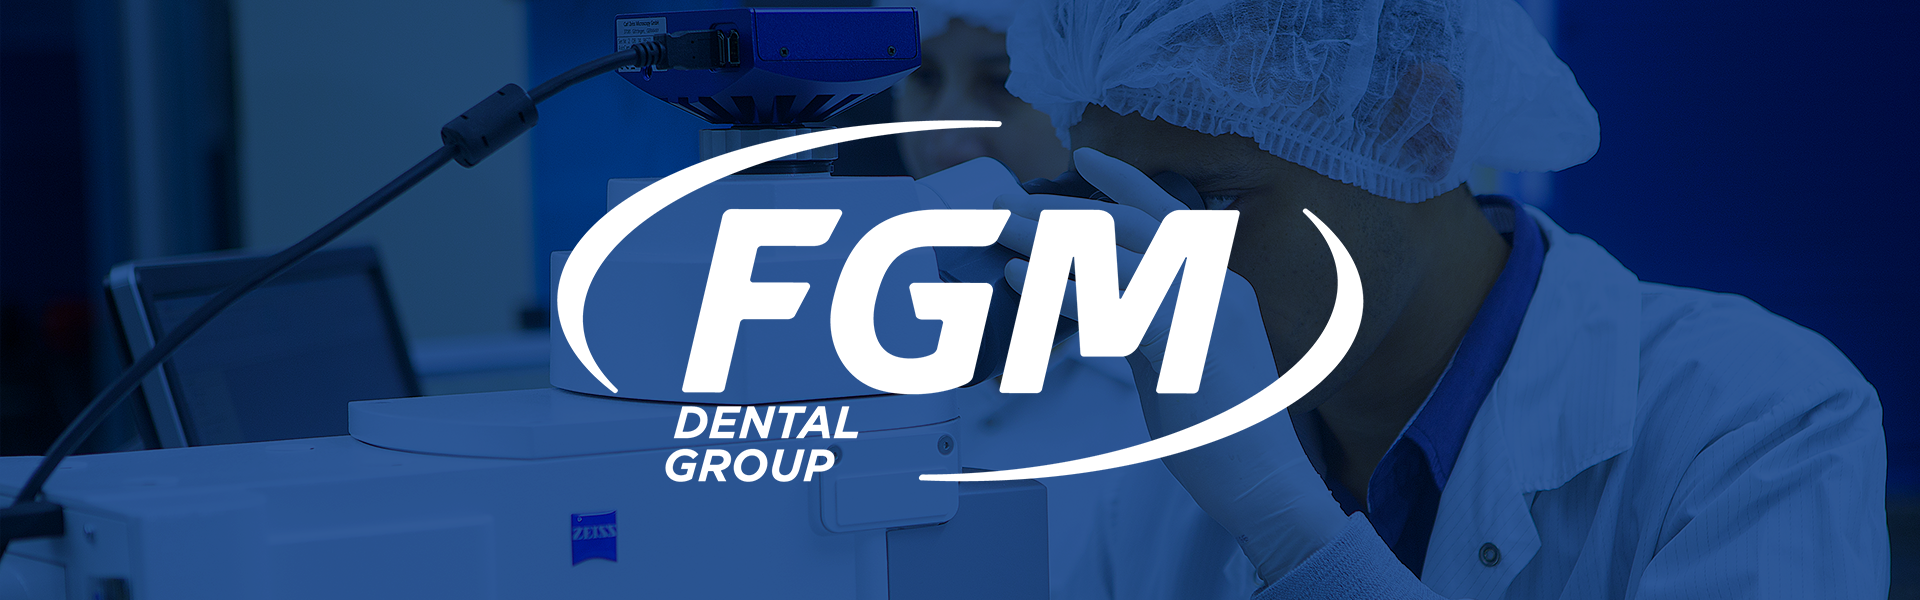 caoa fgmdental blog - Processos regulatórios da FGM garantem a segurança e qualidade ao resultado final